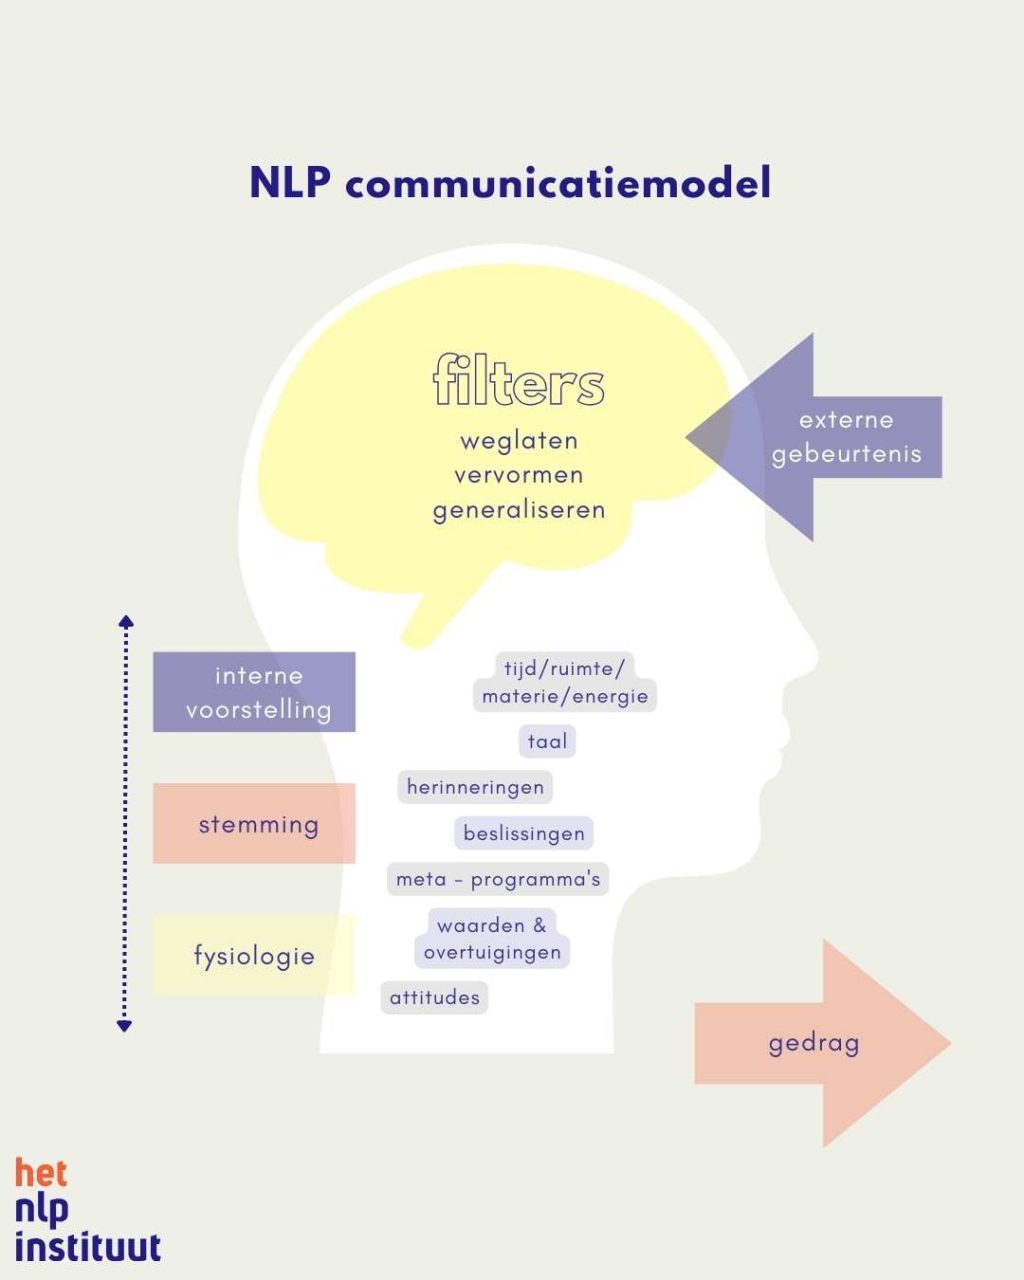 NLP communicatiemodel